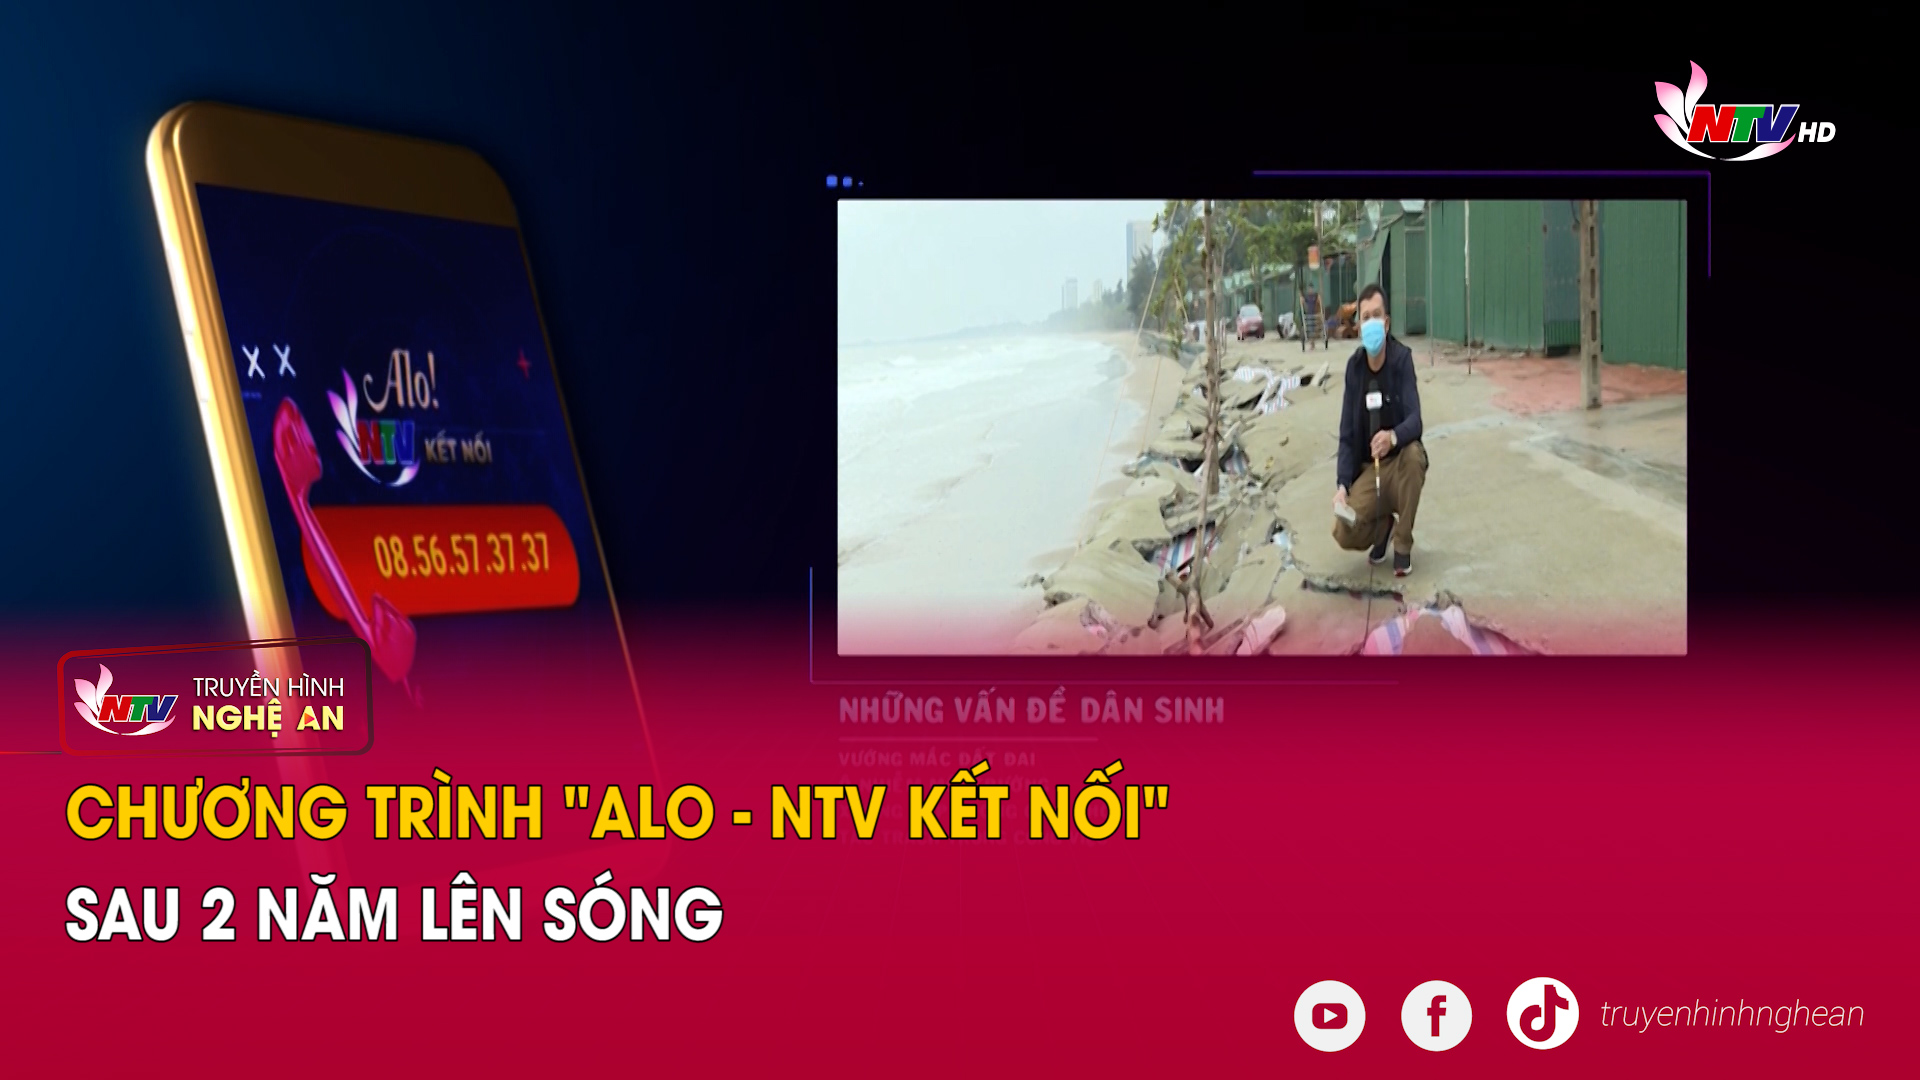 Với khán giả NTV: Chương trình "Alo - NTV kết nối" sau 2 năm lên sóng